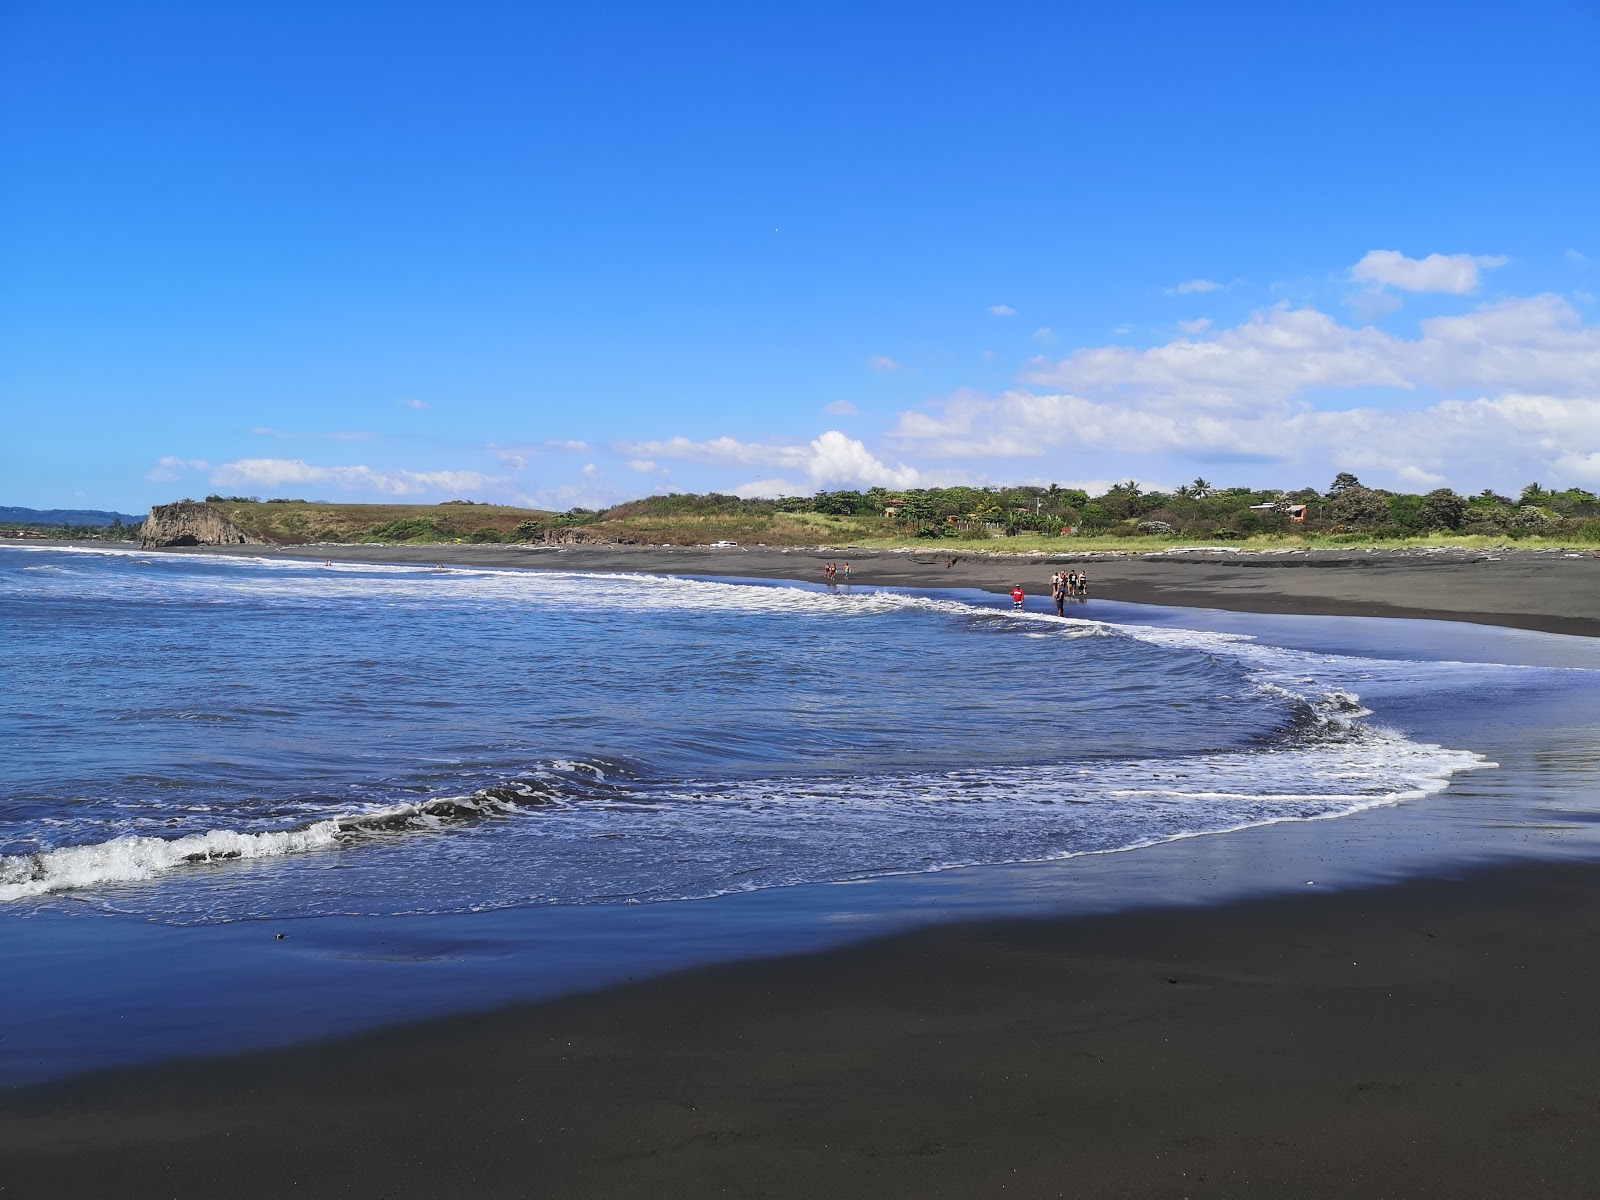 Playa Carrizal'in fotoğrafı kahverengi kum yüzey ile